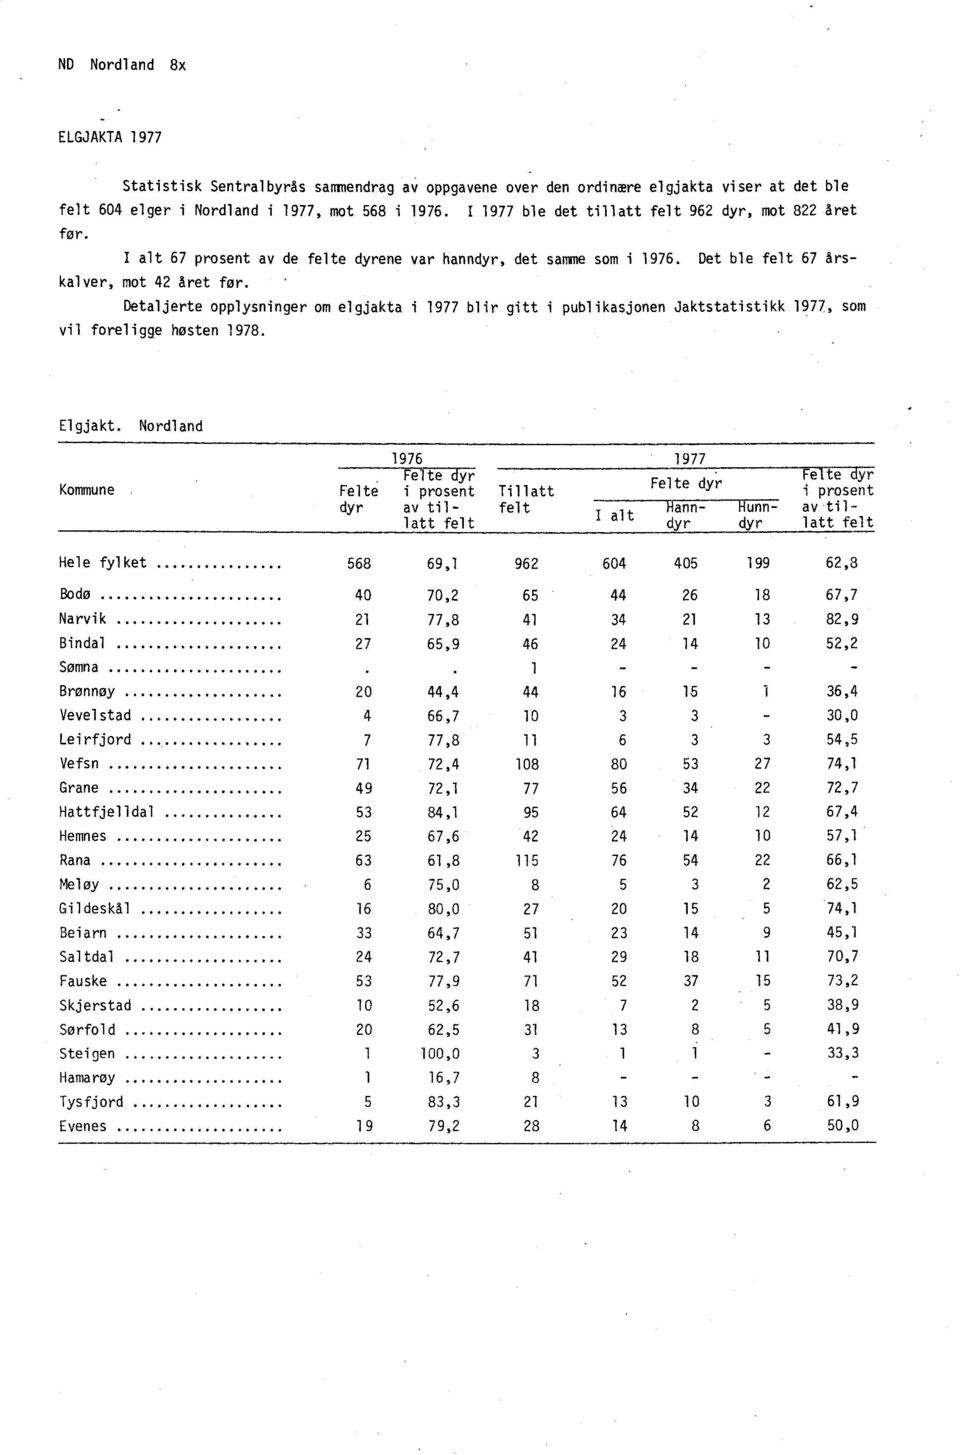 Detaljerte opplysninger om elgjakta i 1977 blir gitt i publikasjonen Jaktstatistikk 1977, som vil foreligge høsten 1978. Elgjakt.